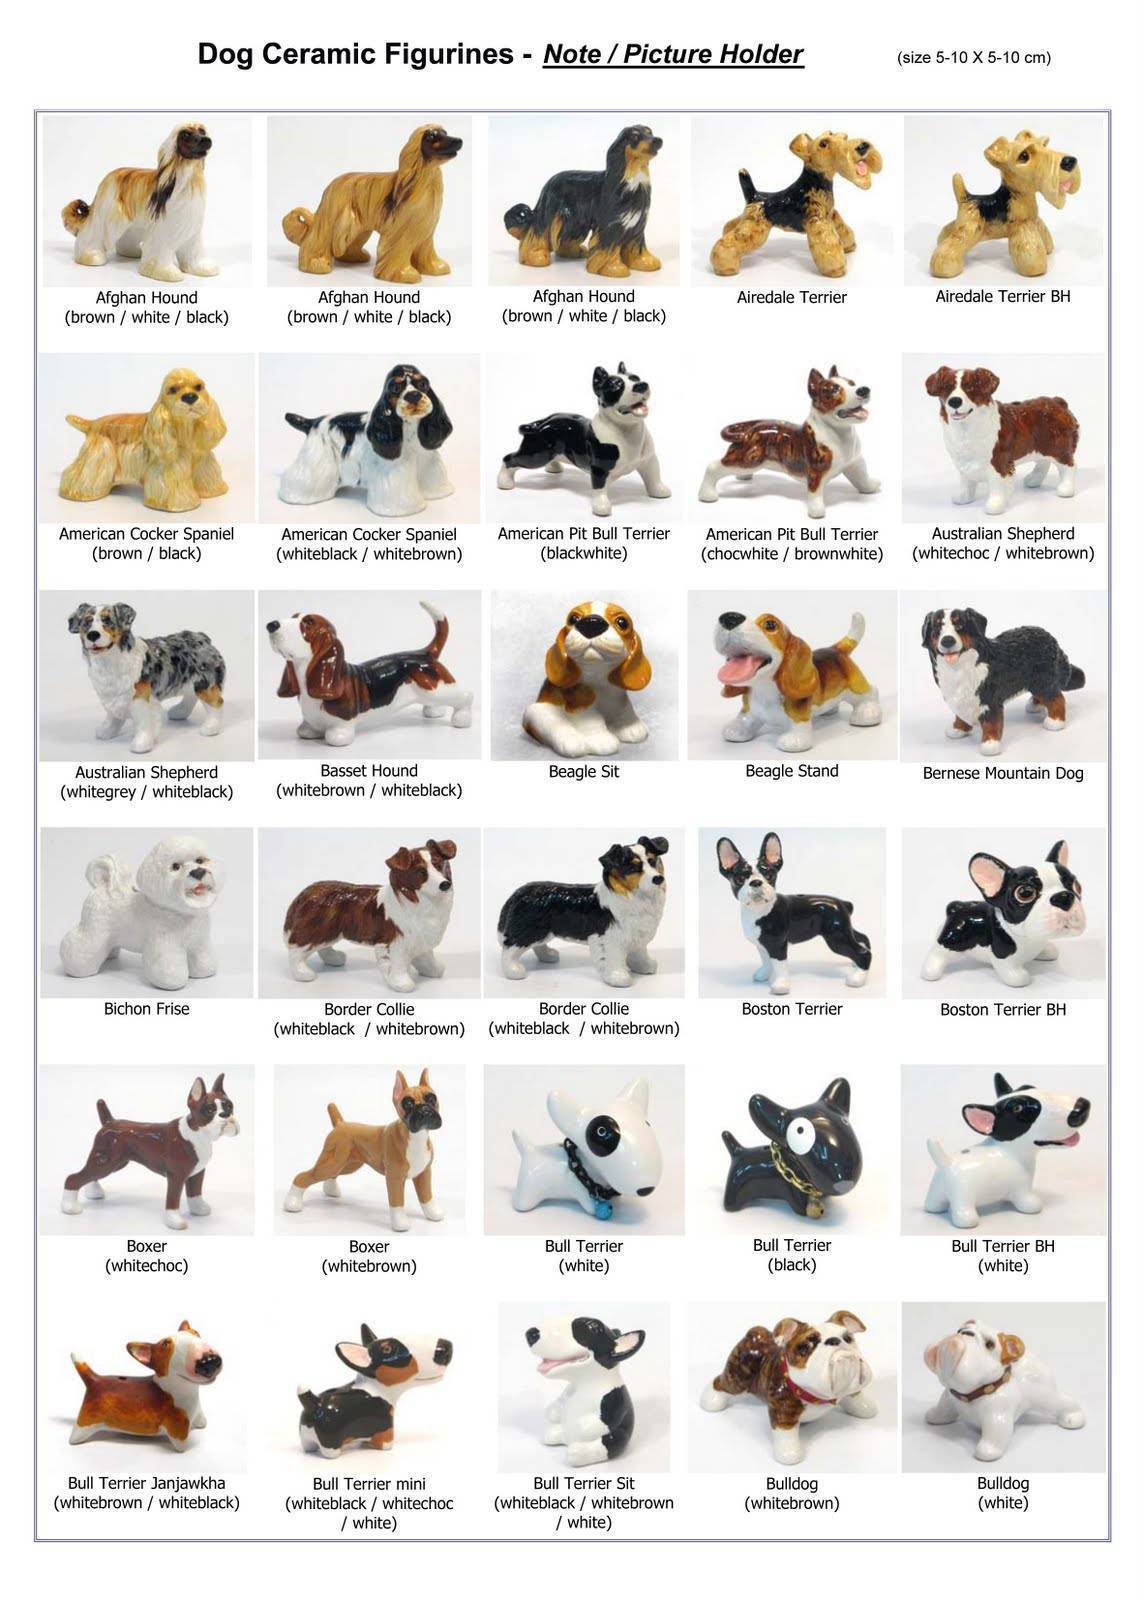 Породы собак маленьких размеров: названия и фотографии